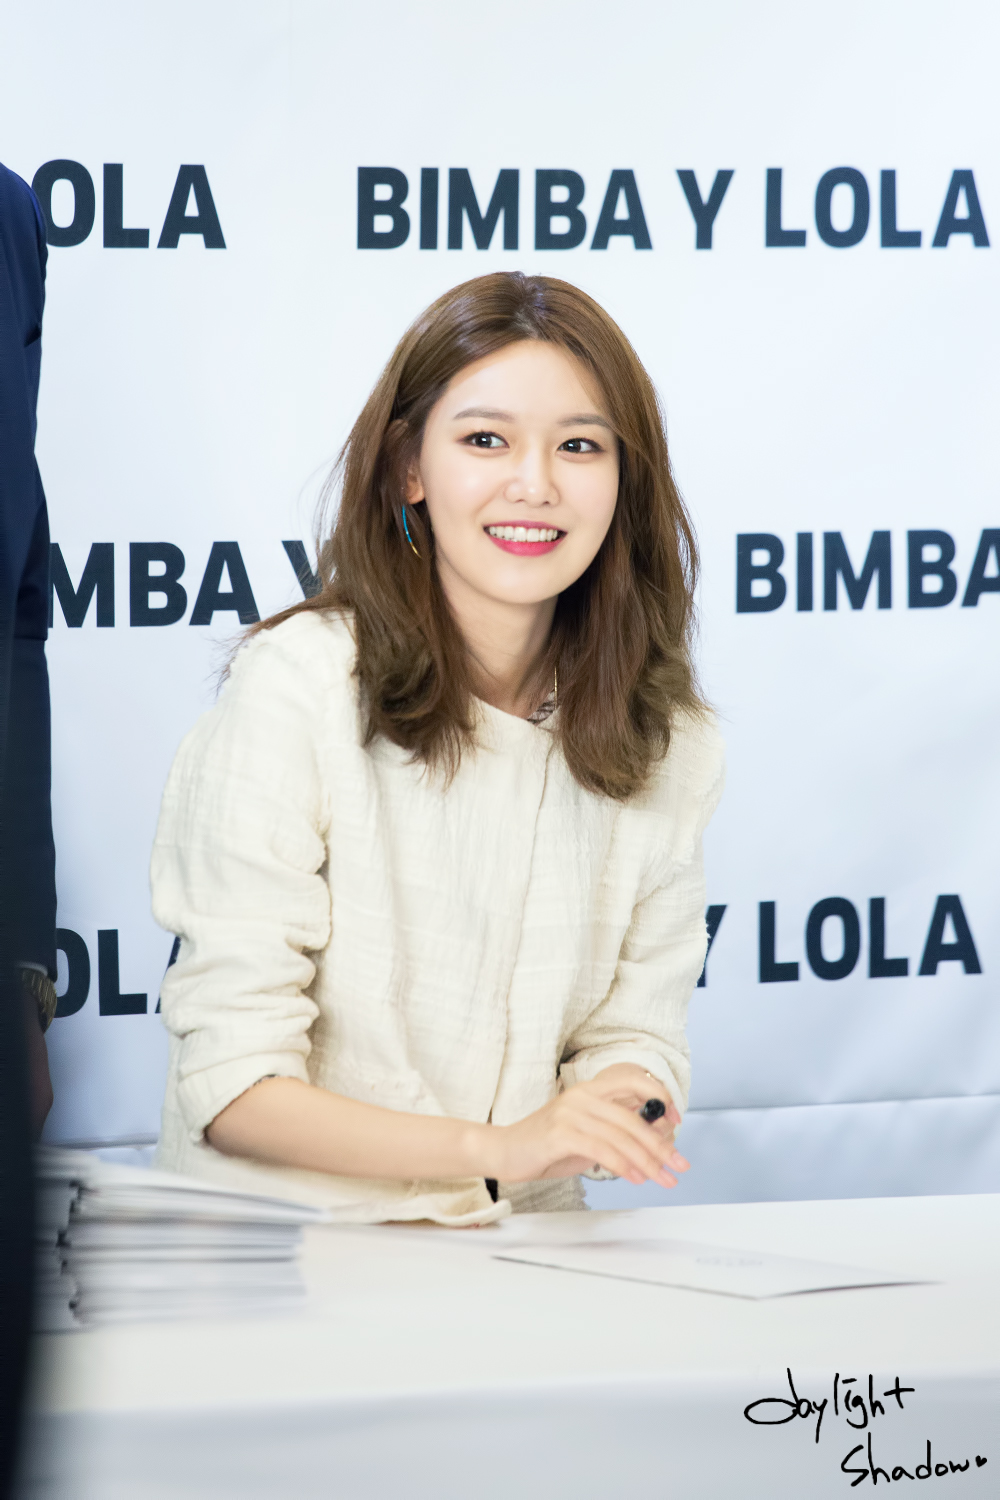 [PIC][10-03-2017]SooYoung tham dự buổi Fansign cho dòng thời trang "BIMBA Y LOLA" tại Lotte Department Store vào chiều nay - Page 2 272FBA4158C7DA02338E2C